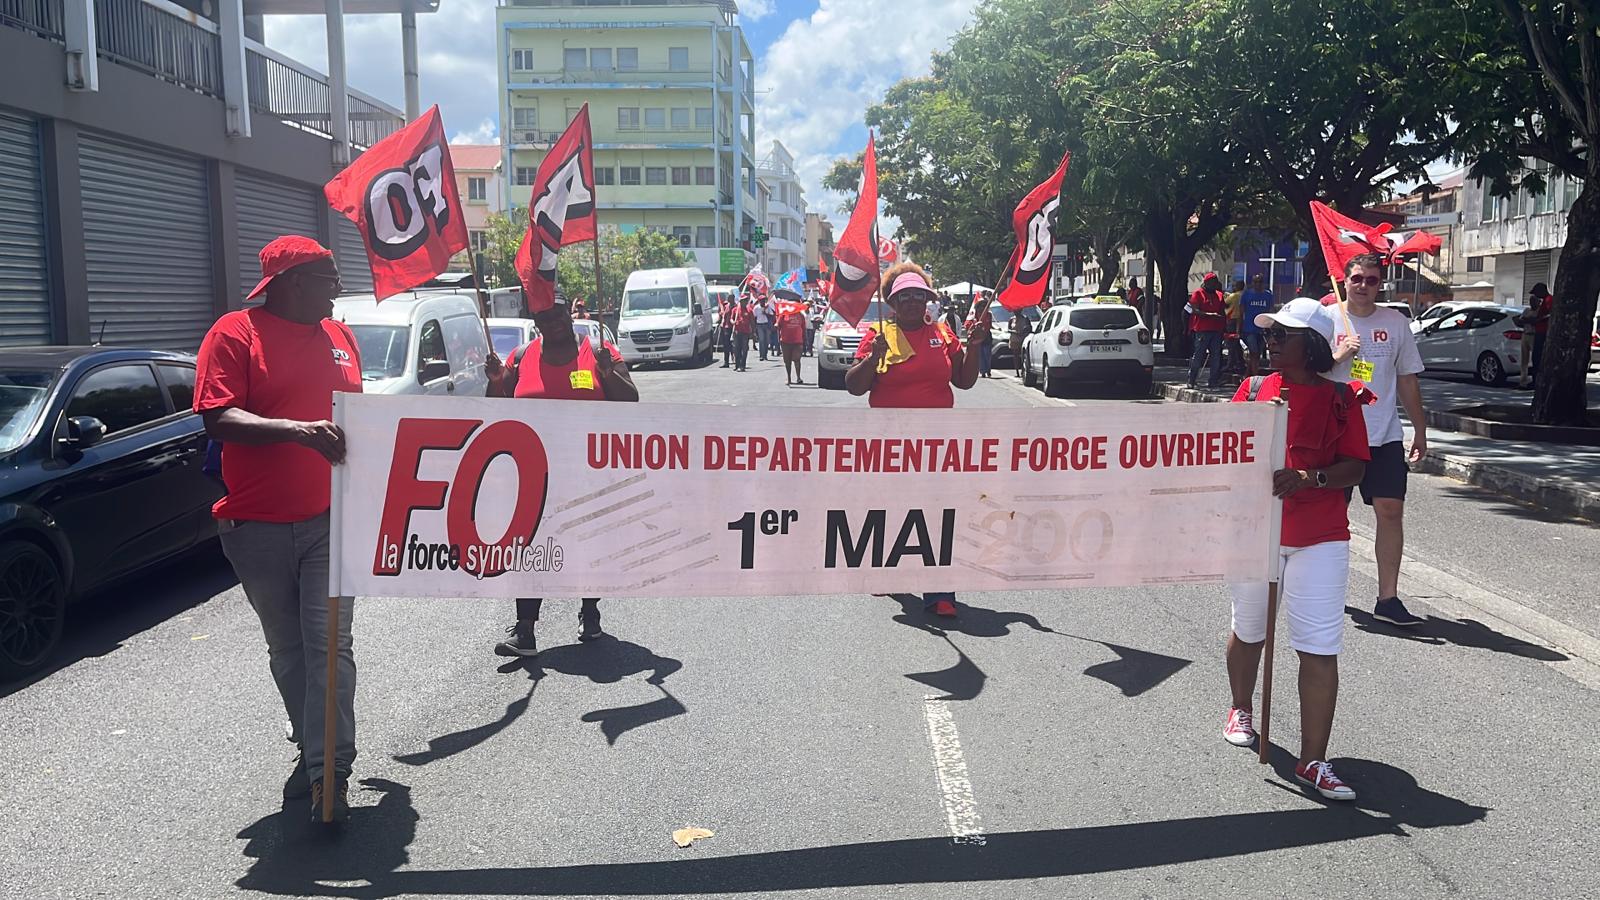     1er mai : les syndicats donnent de la voix dans les rues de Fort-de-France

